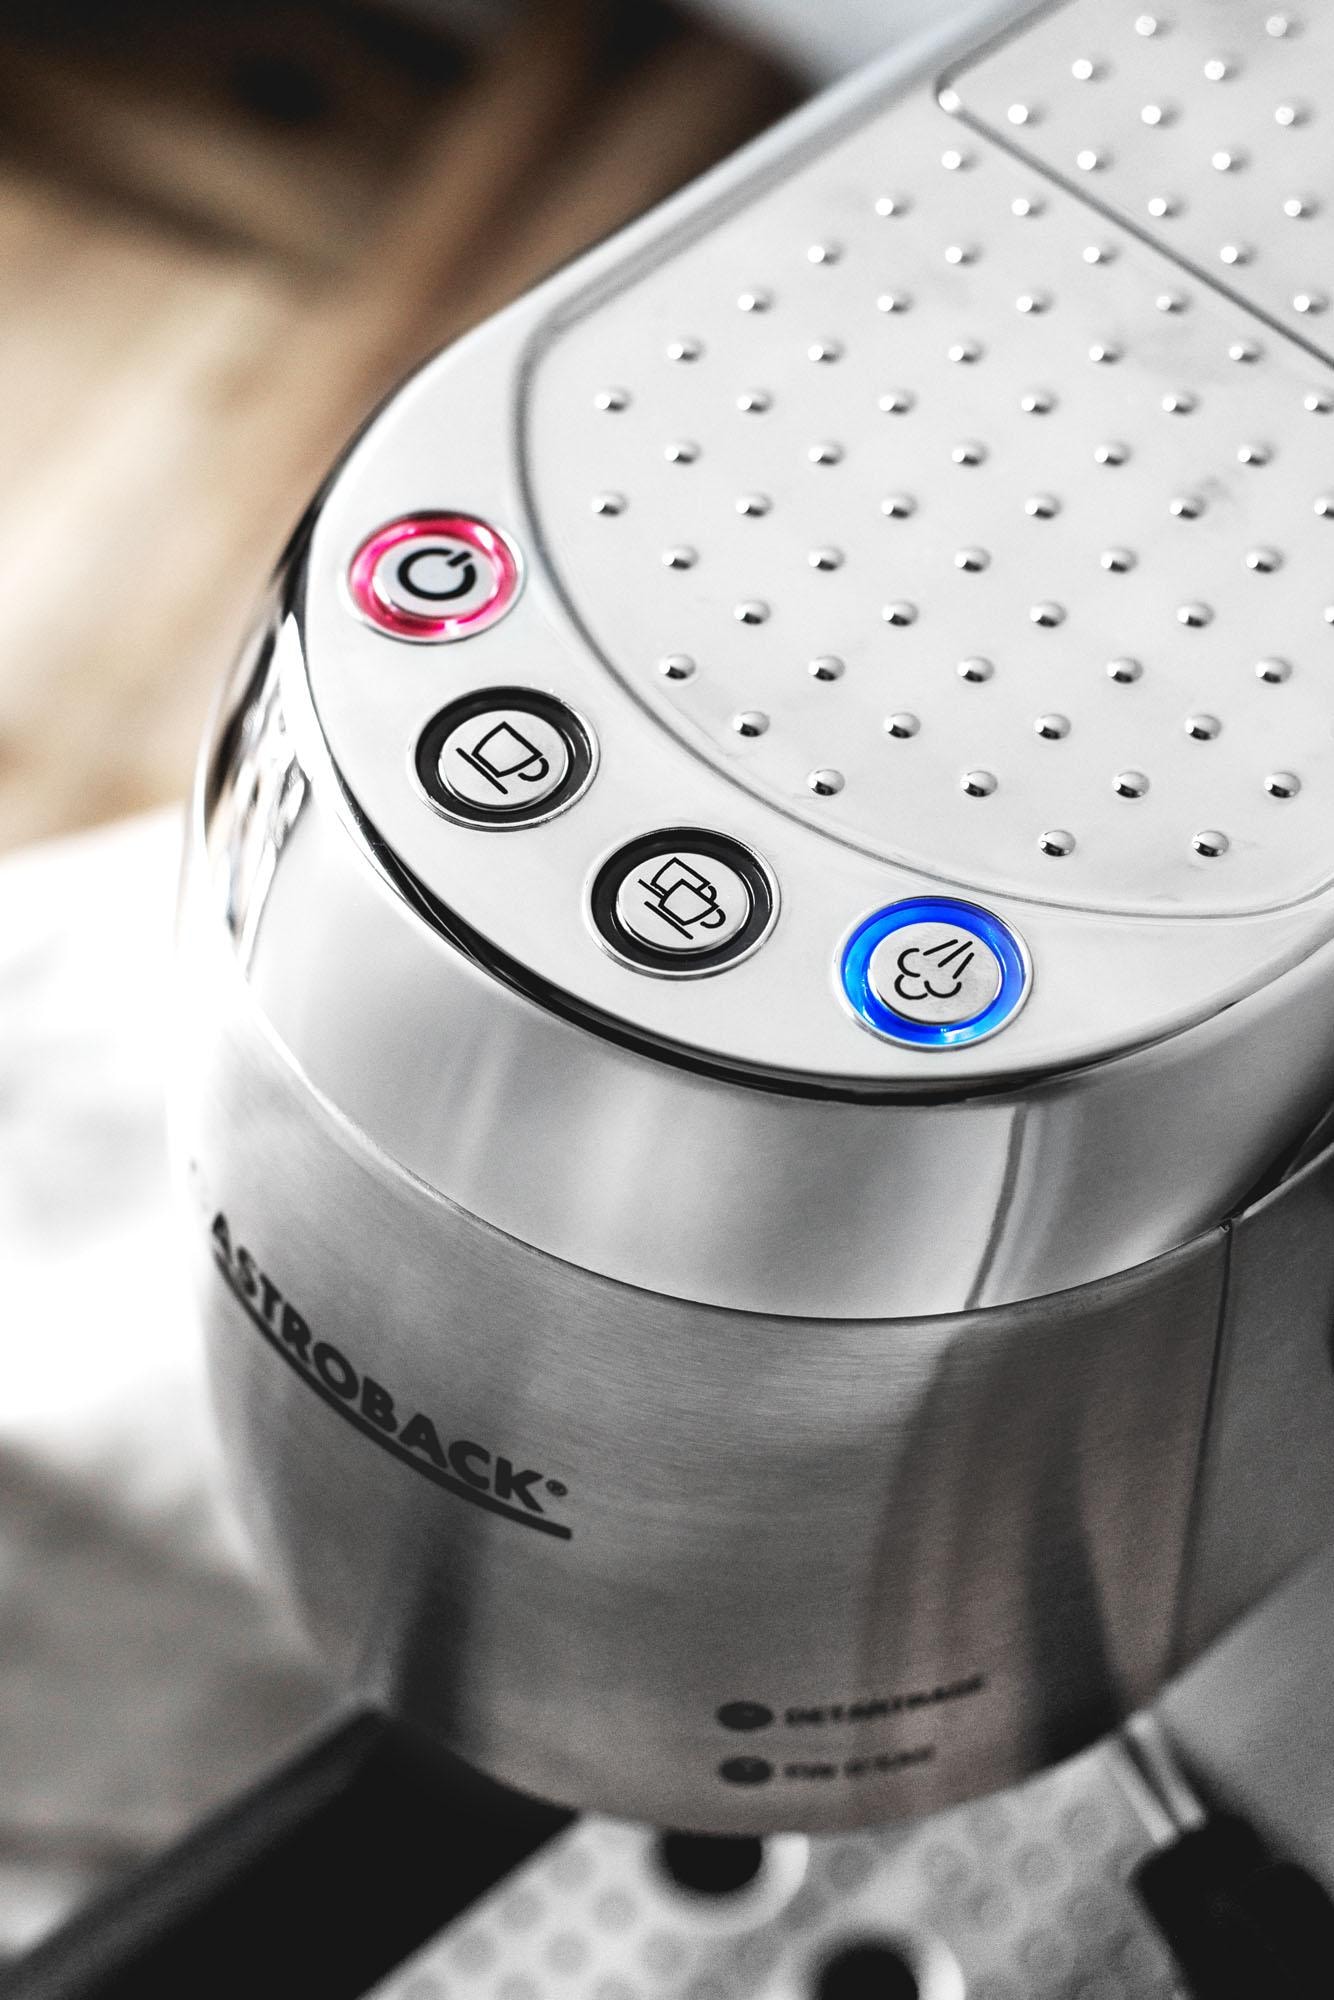 Gastroback Espressomaschine »42716 Design Espresso Piccolo«